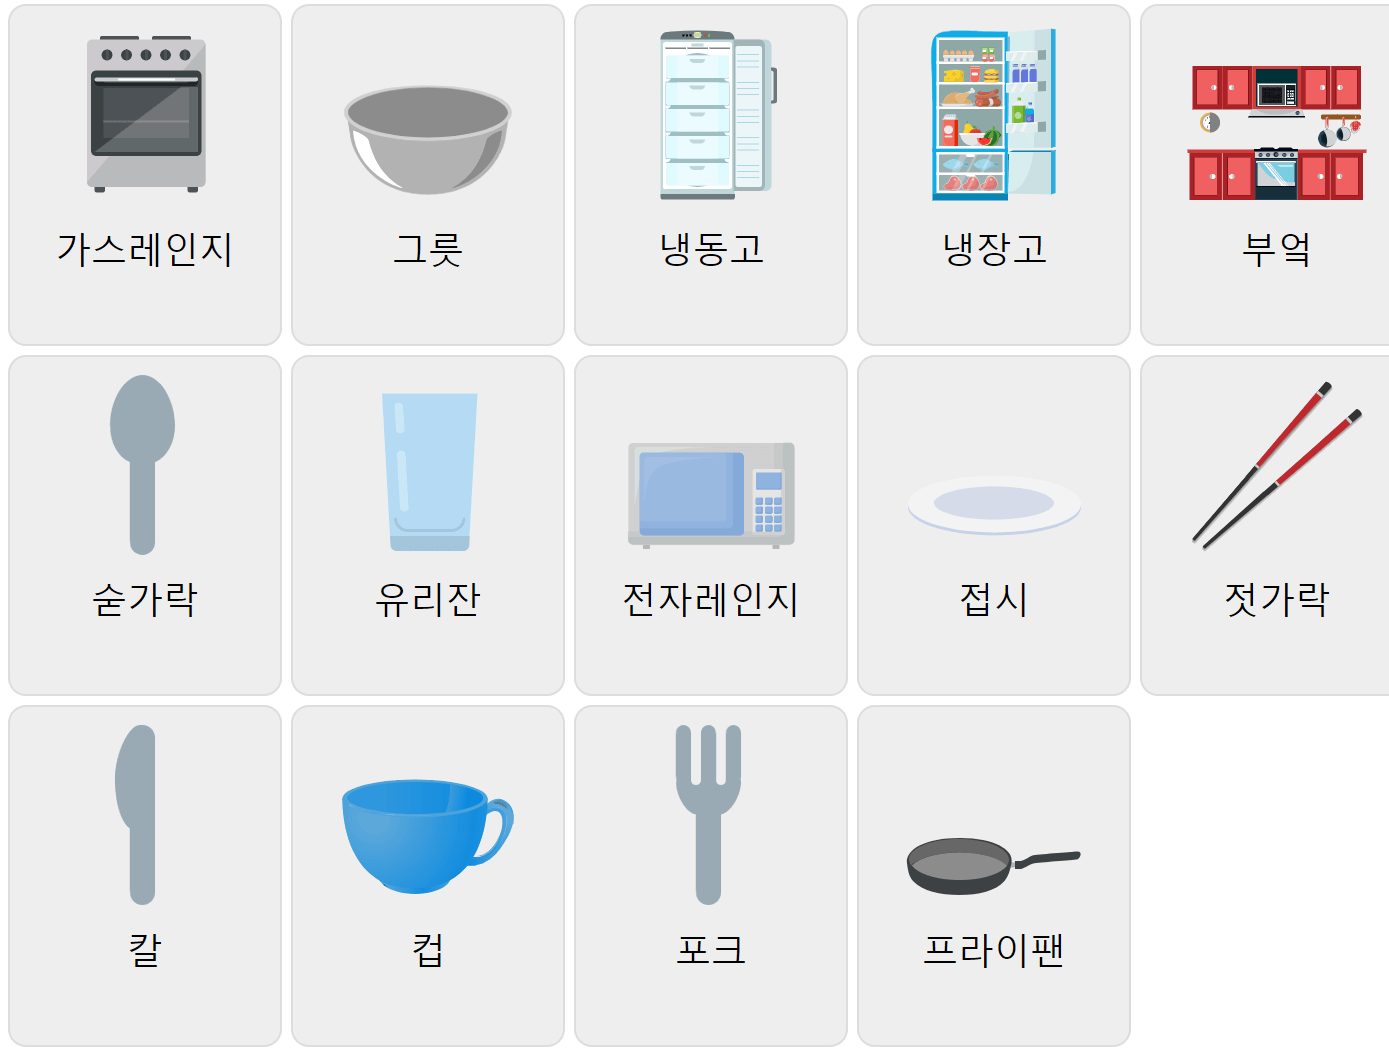 Küchenvokabular auf Koreanisch